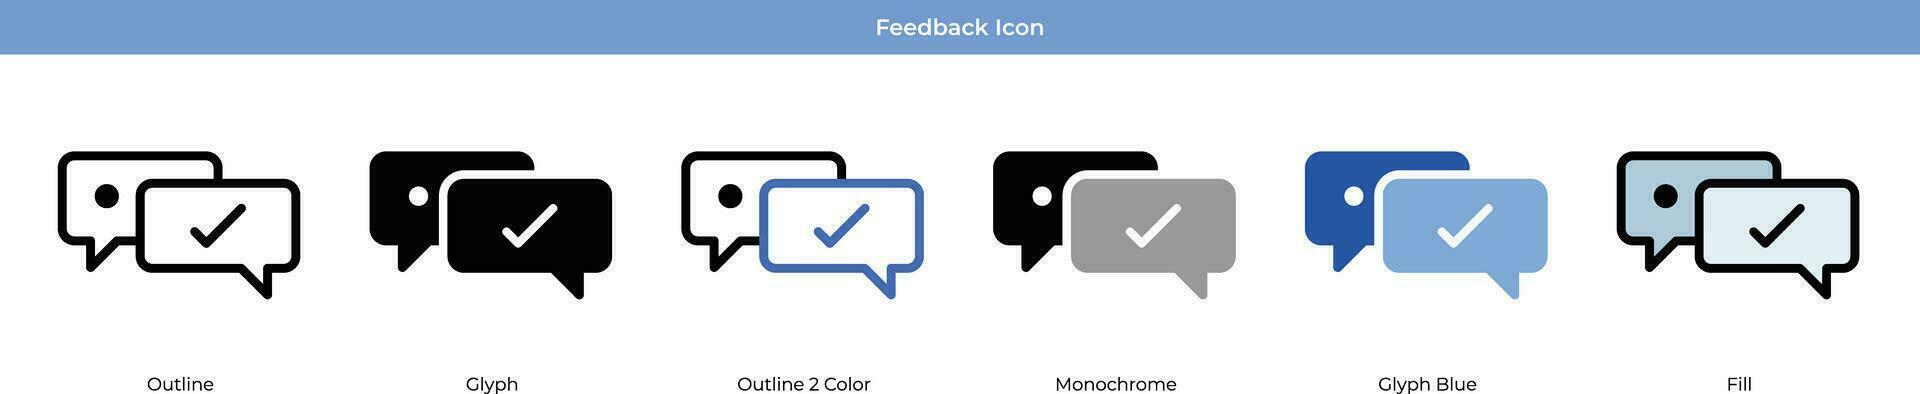 Feedback Icon Set vector